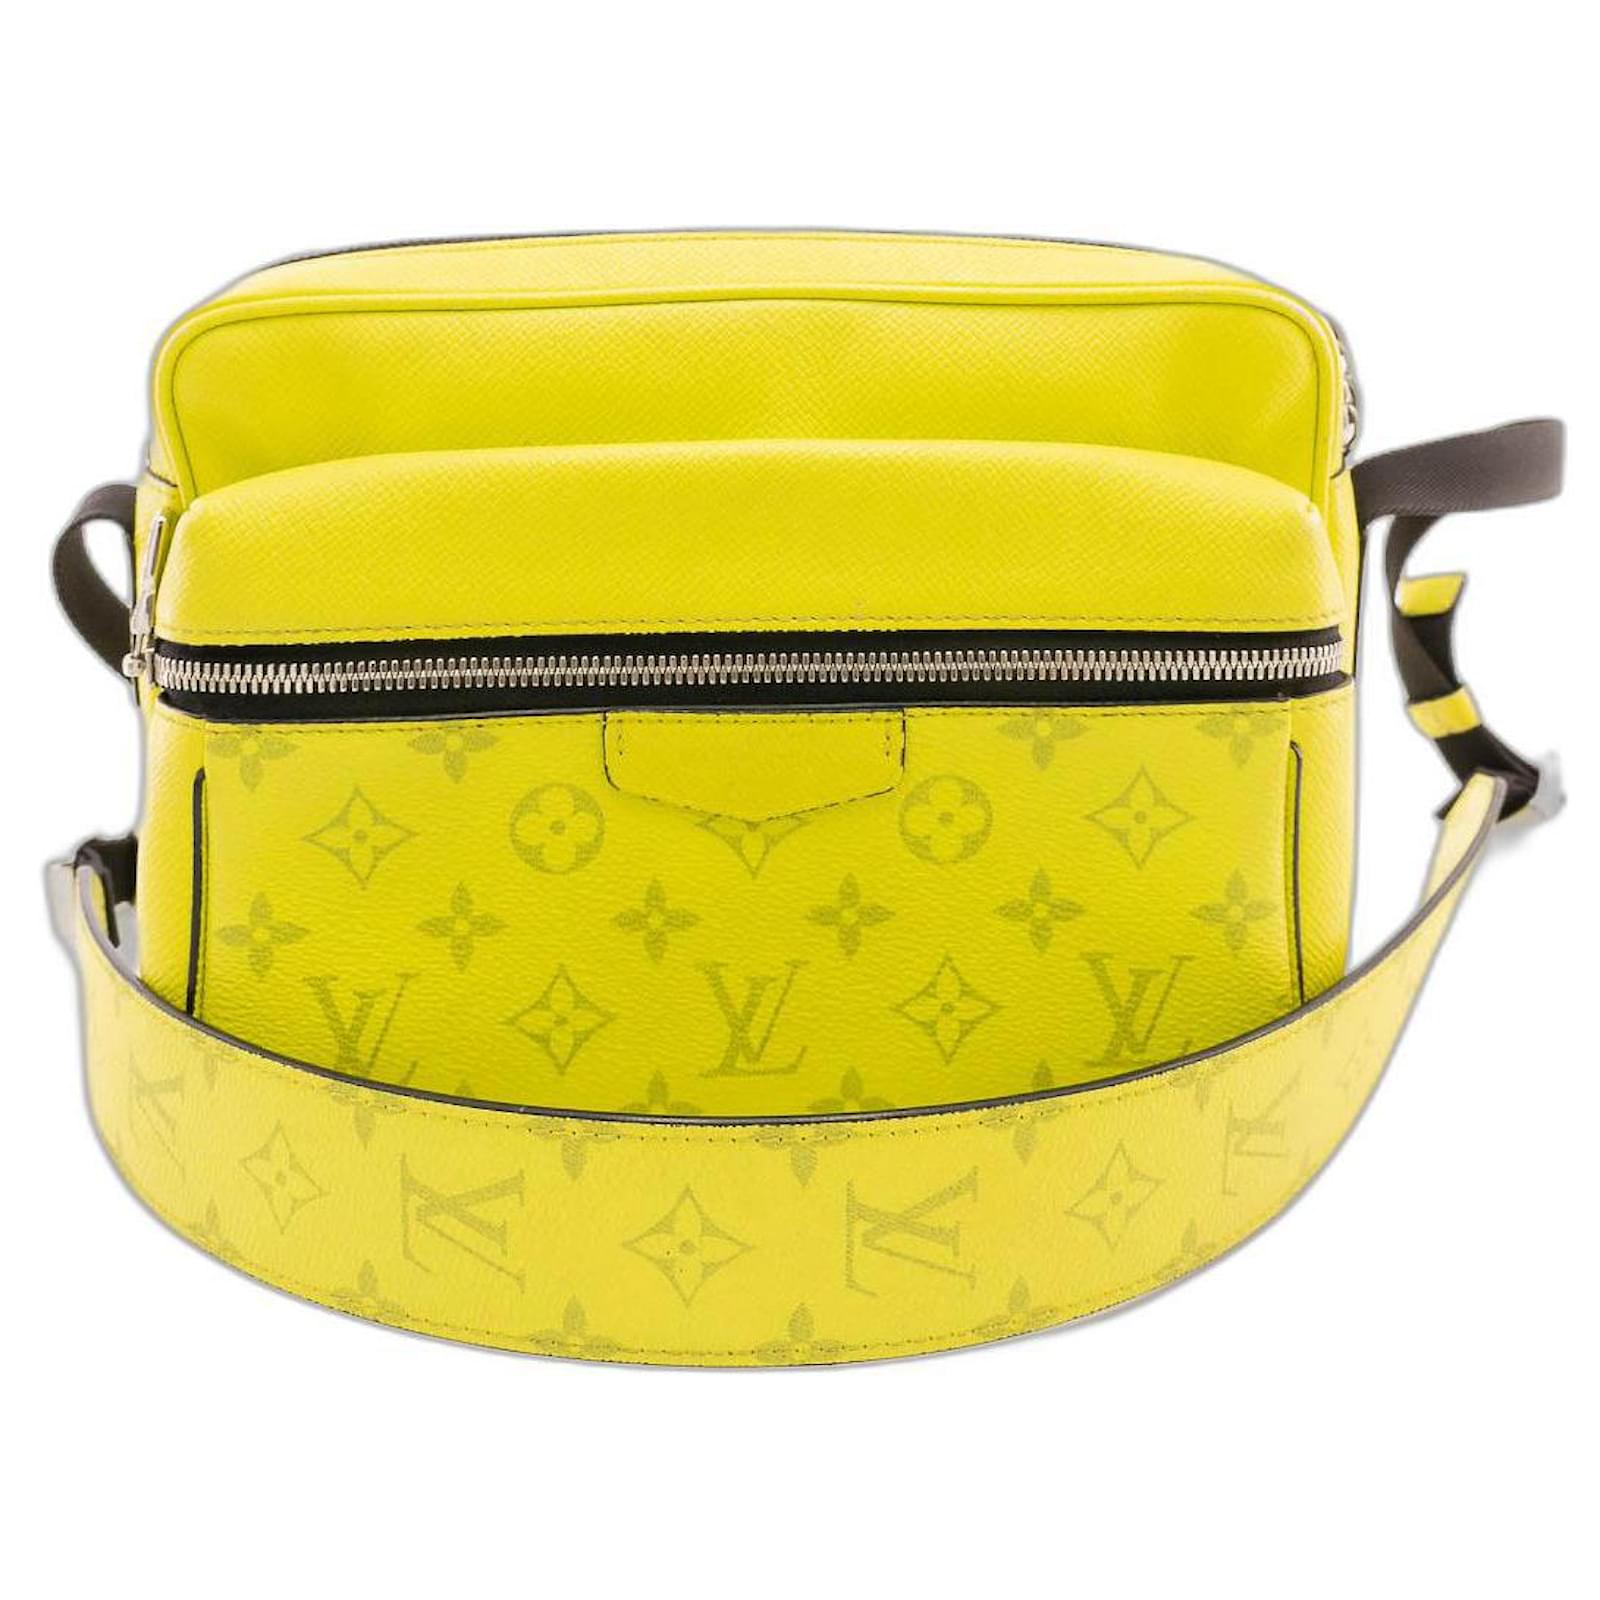 Louis Vuitton Outdoor Messenger Bag – ZAK BAGS ©️